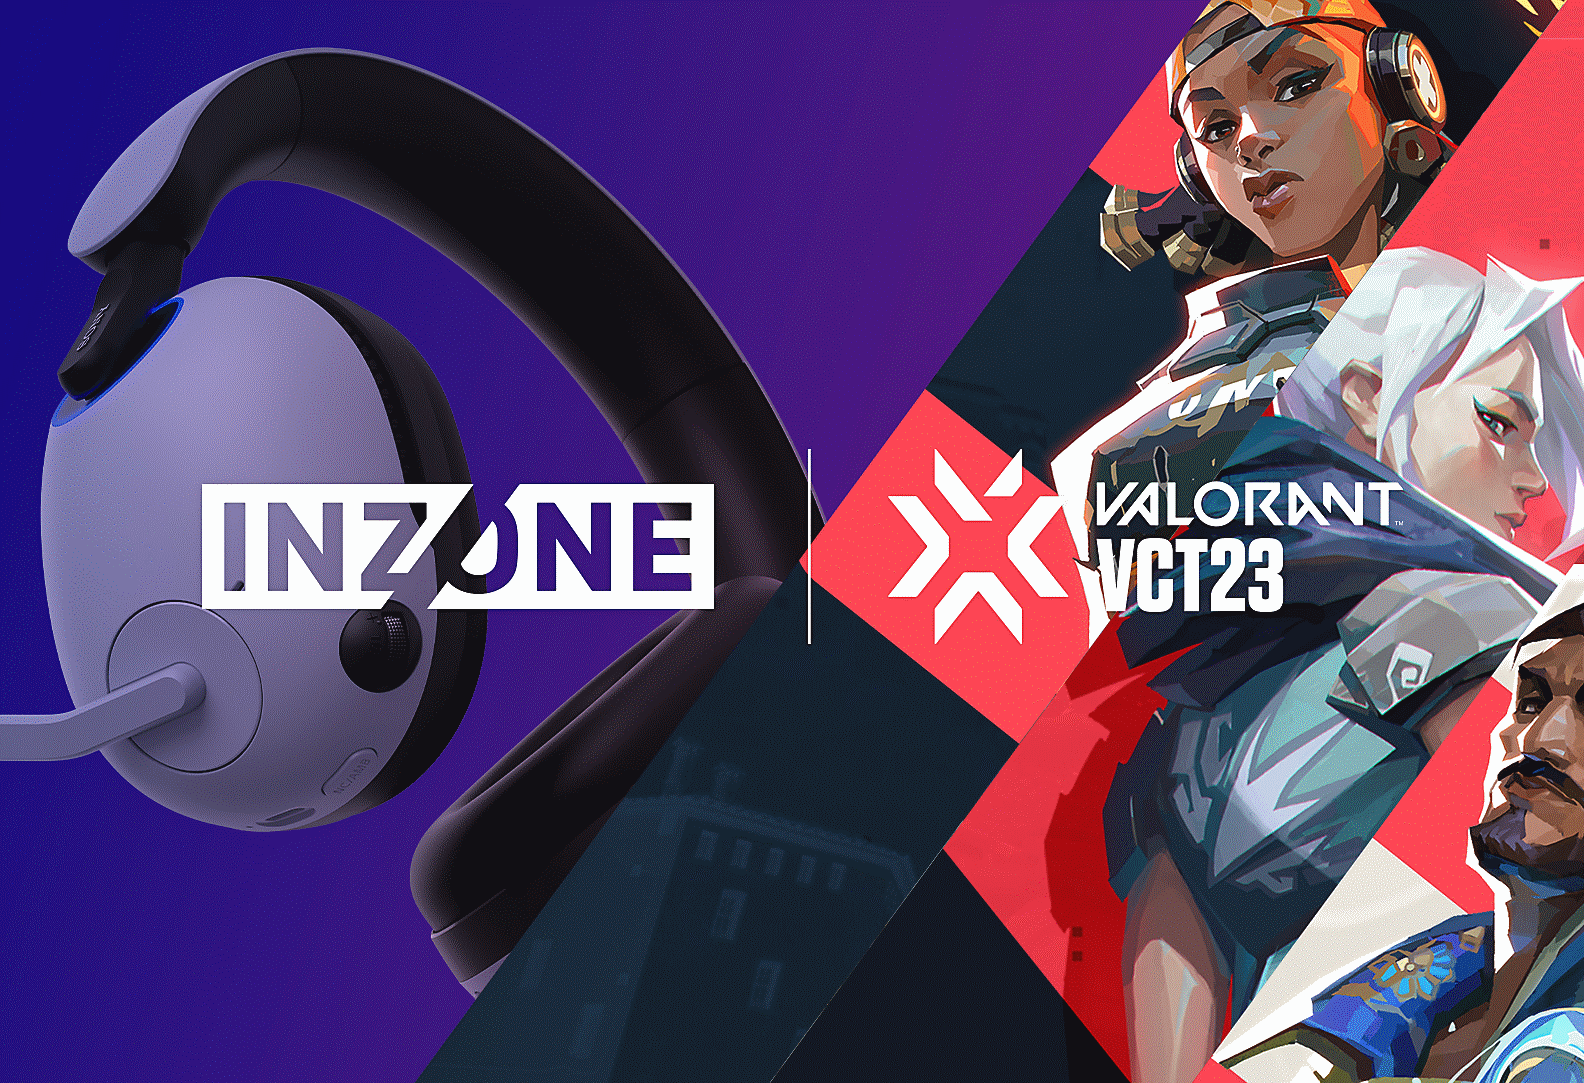 VALORANT karakterleriyle Sony INZONE H9 oyun kulaklığının ve INZONE ile VALORANT VCT23 logolarının görüntüsü